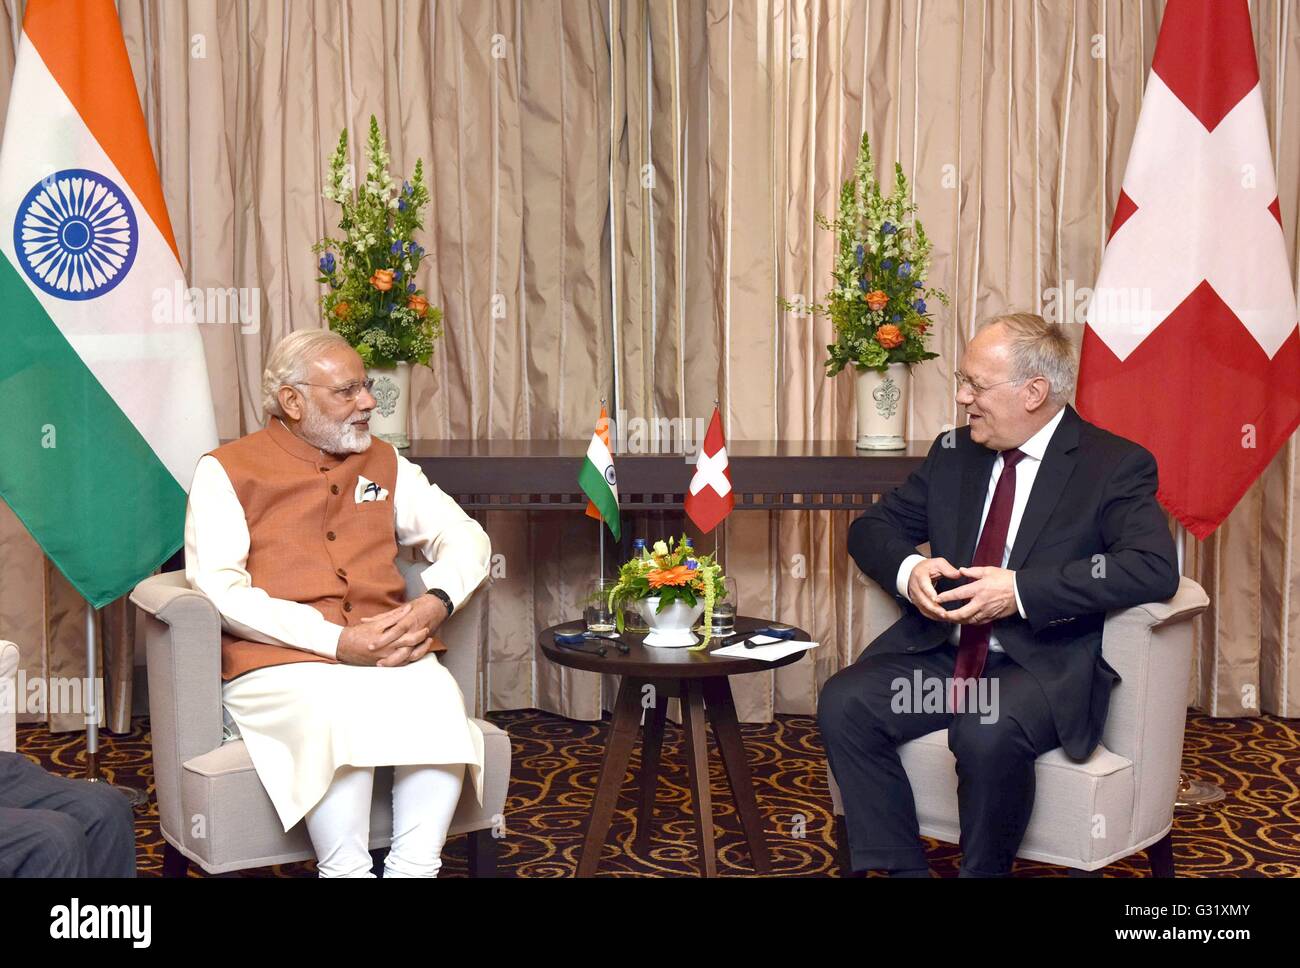 Schweizer Präsident Johann Schneider-Ammann während eines bilateralen  Treffens mit indischen Premierminister Narendra Modi 6. Juni 2016 in Genf,  Schweiz Stockfotografie - Alamy